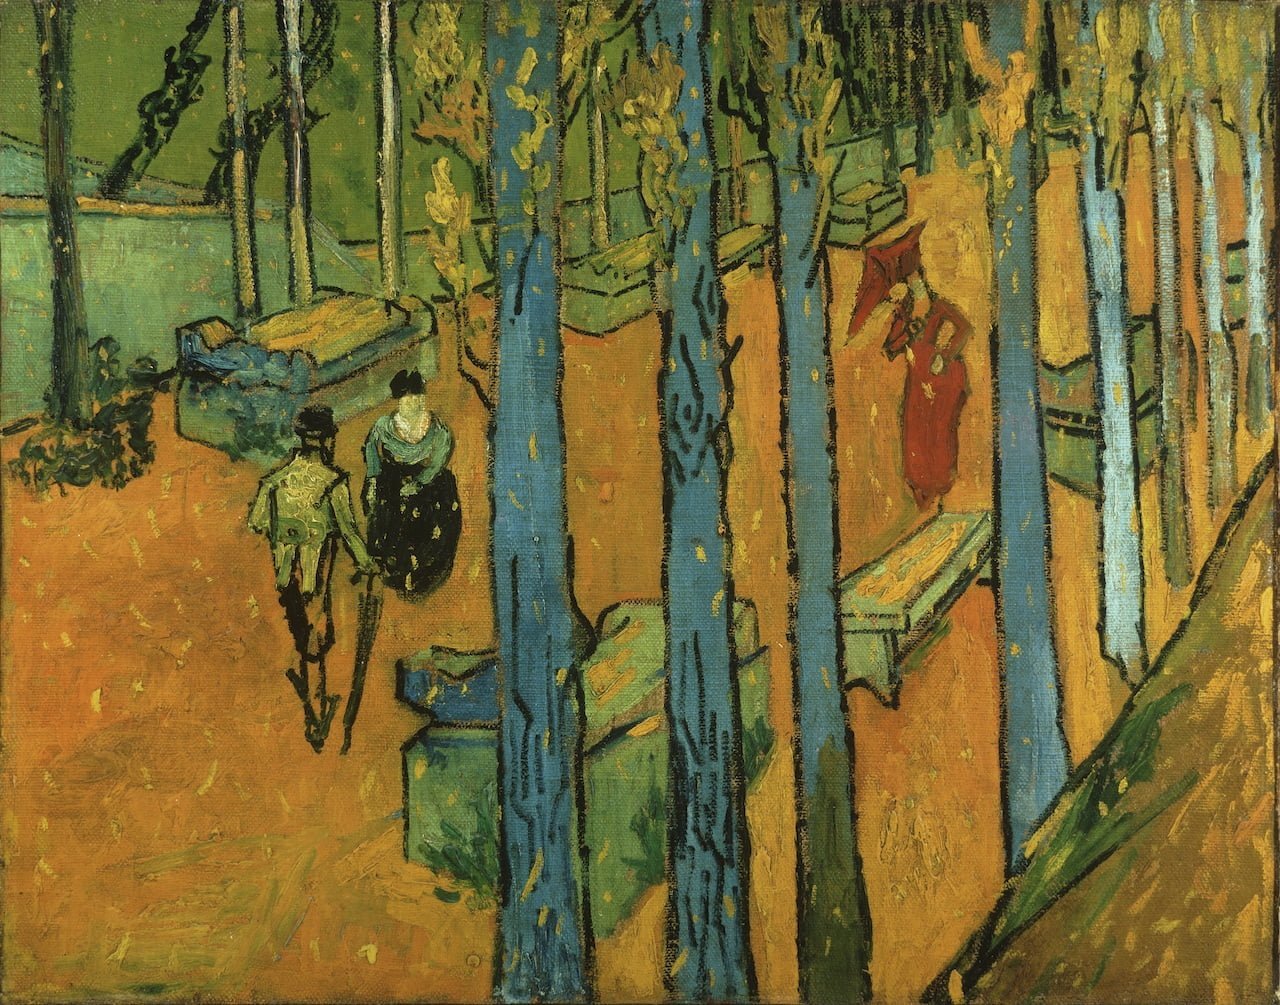 Pomarańczowo-zielony obraz, trzy osoby spacerują pośród drzew i jesiennych liści.